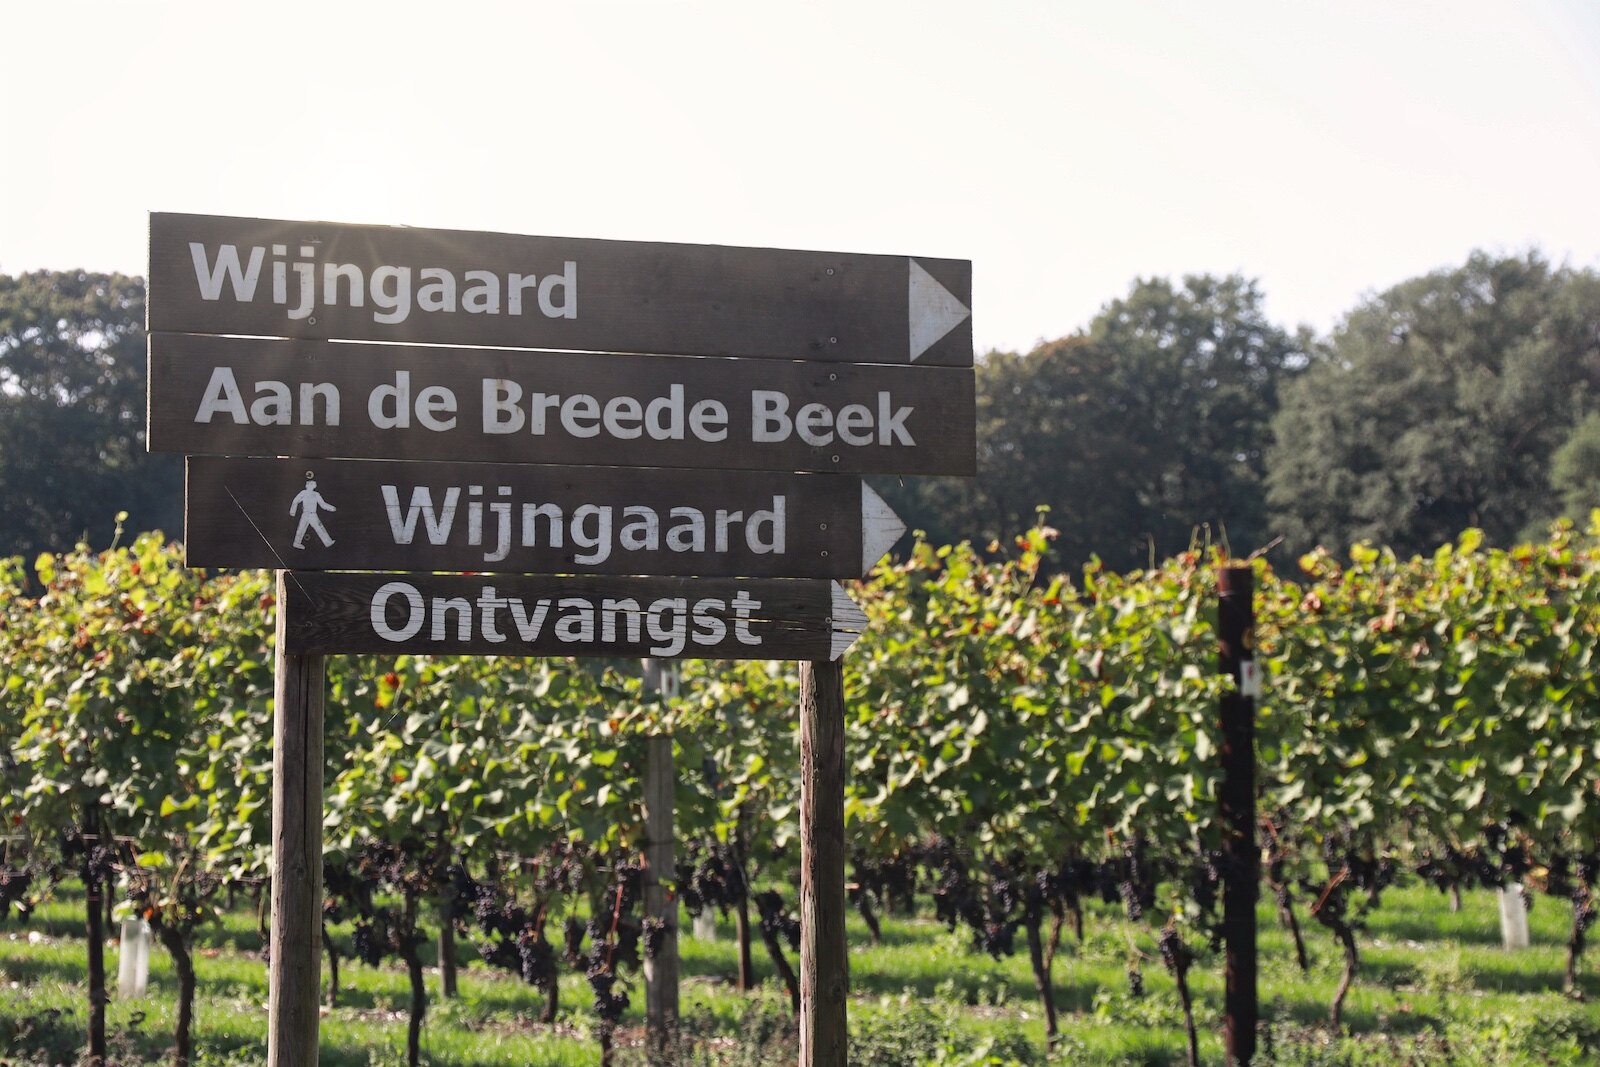 Dutch winery Wijngaard Aan de Breede Beek